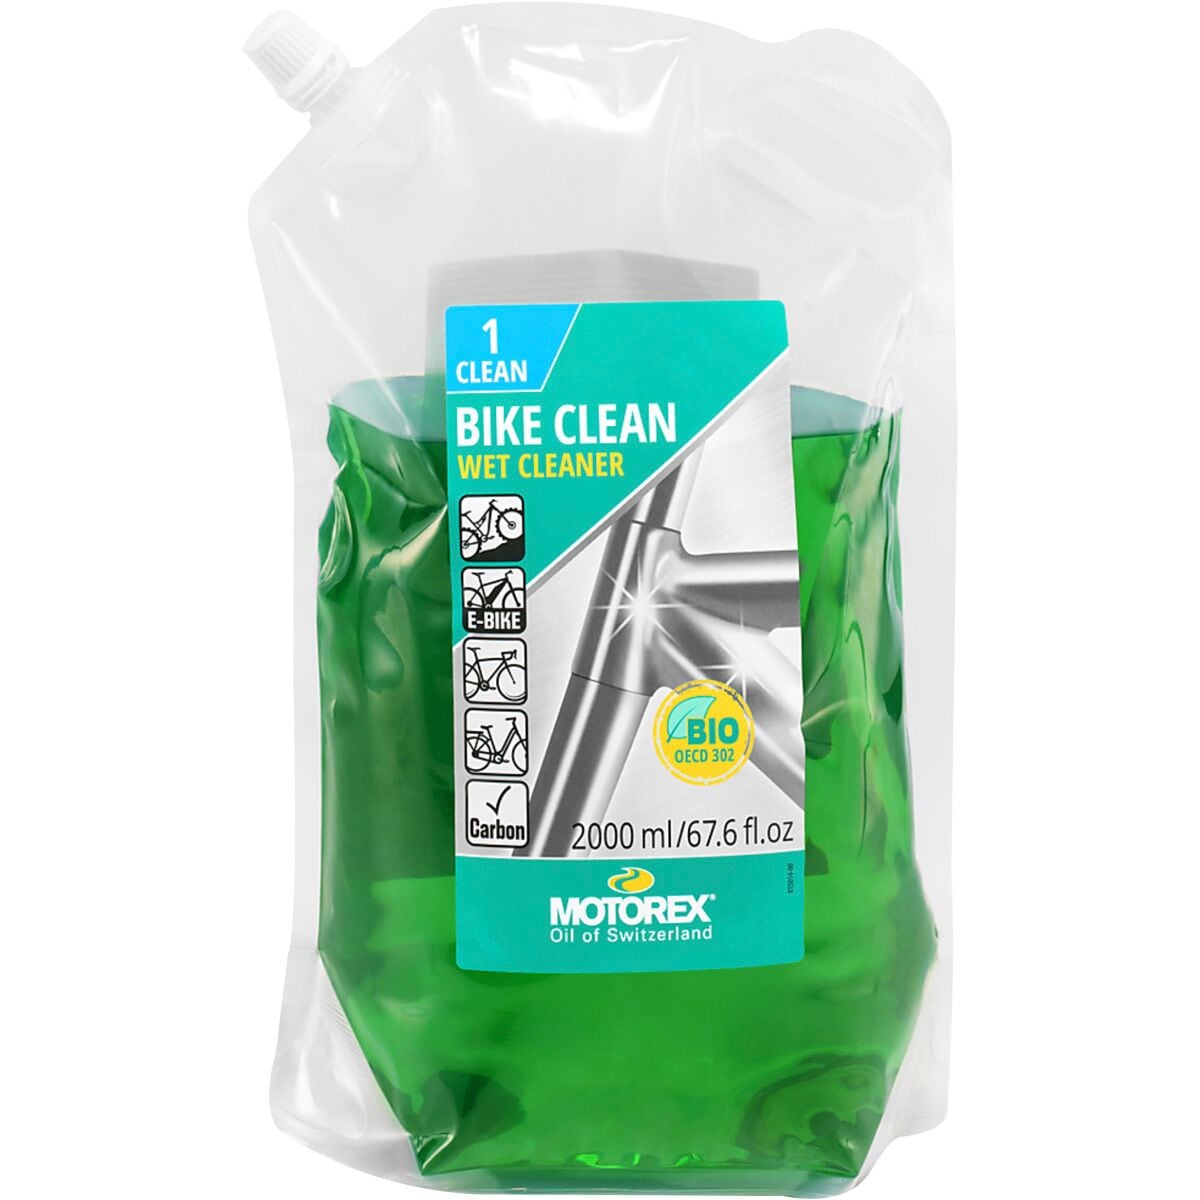 Заправка для очистки велосипеда Motorex